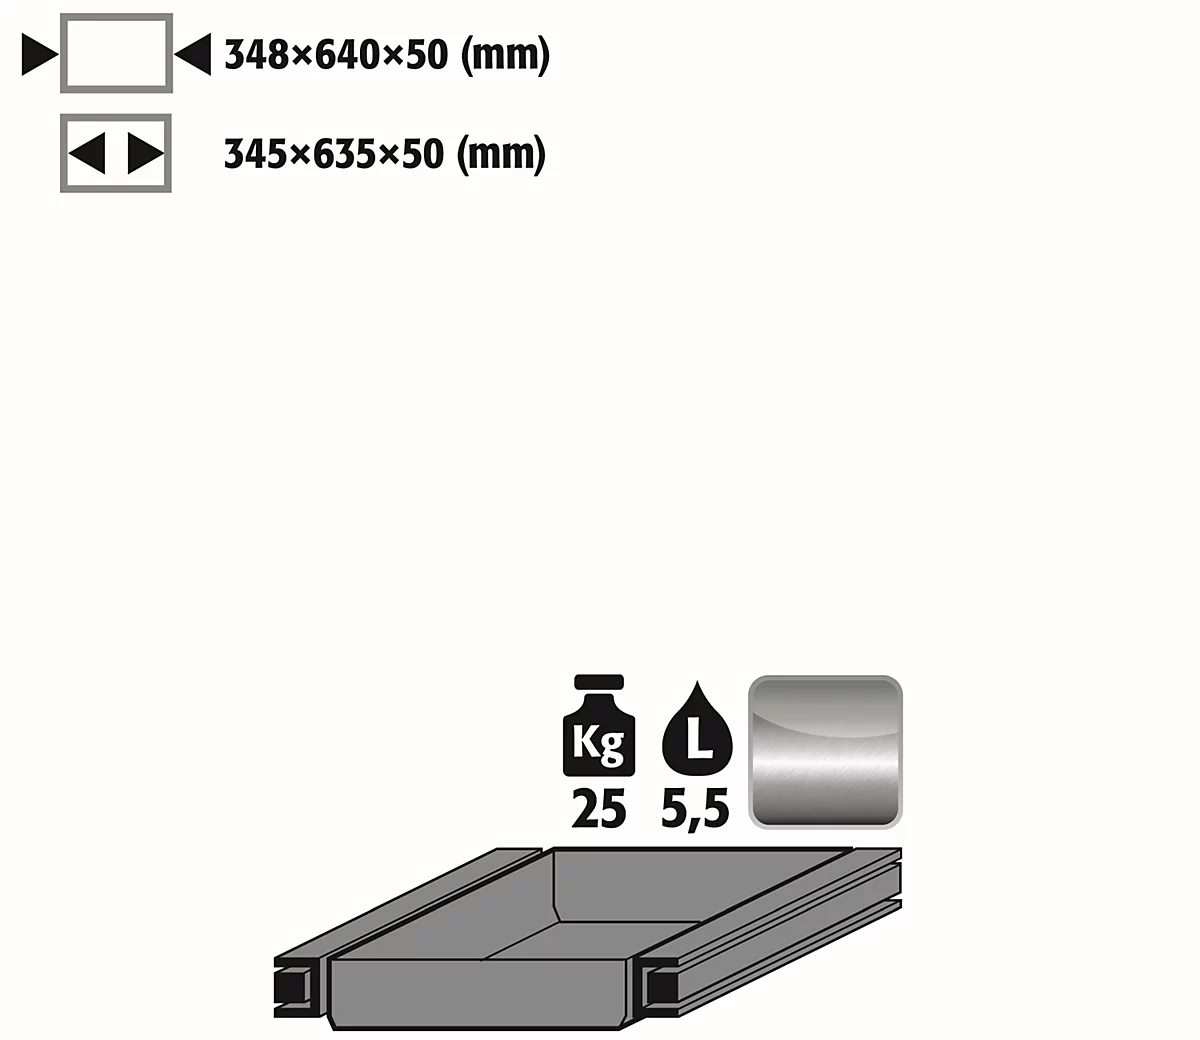 Auszugswanne Standard für asecos Sicherheitsschränke der S90 Serie, Edelstahl 1.4301, B 348 x T 640 x H 50 mm, 5,5 l, bis 25 kg